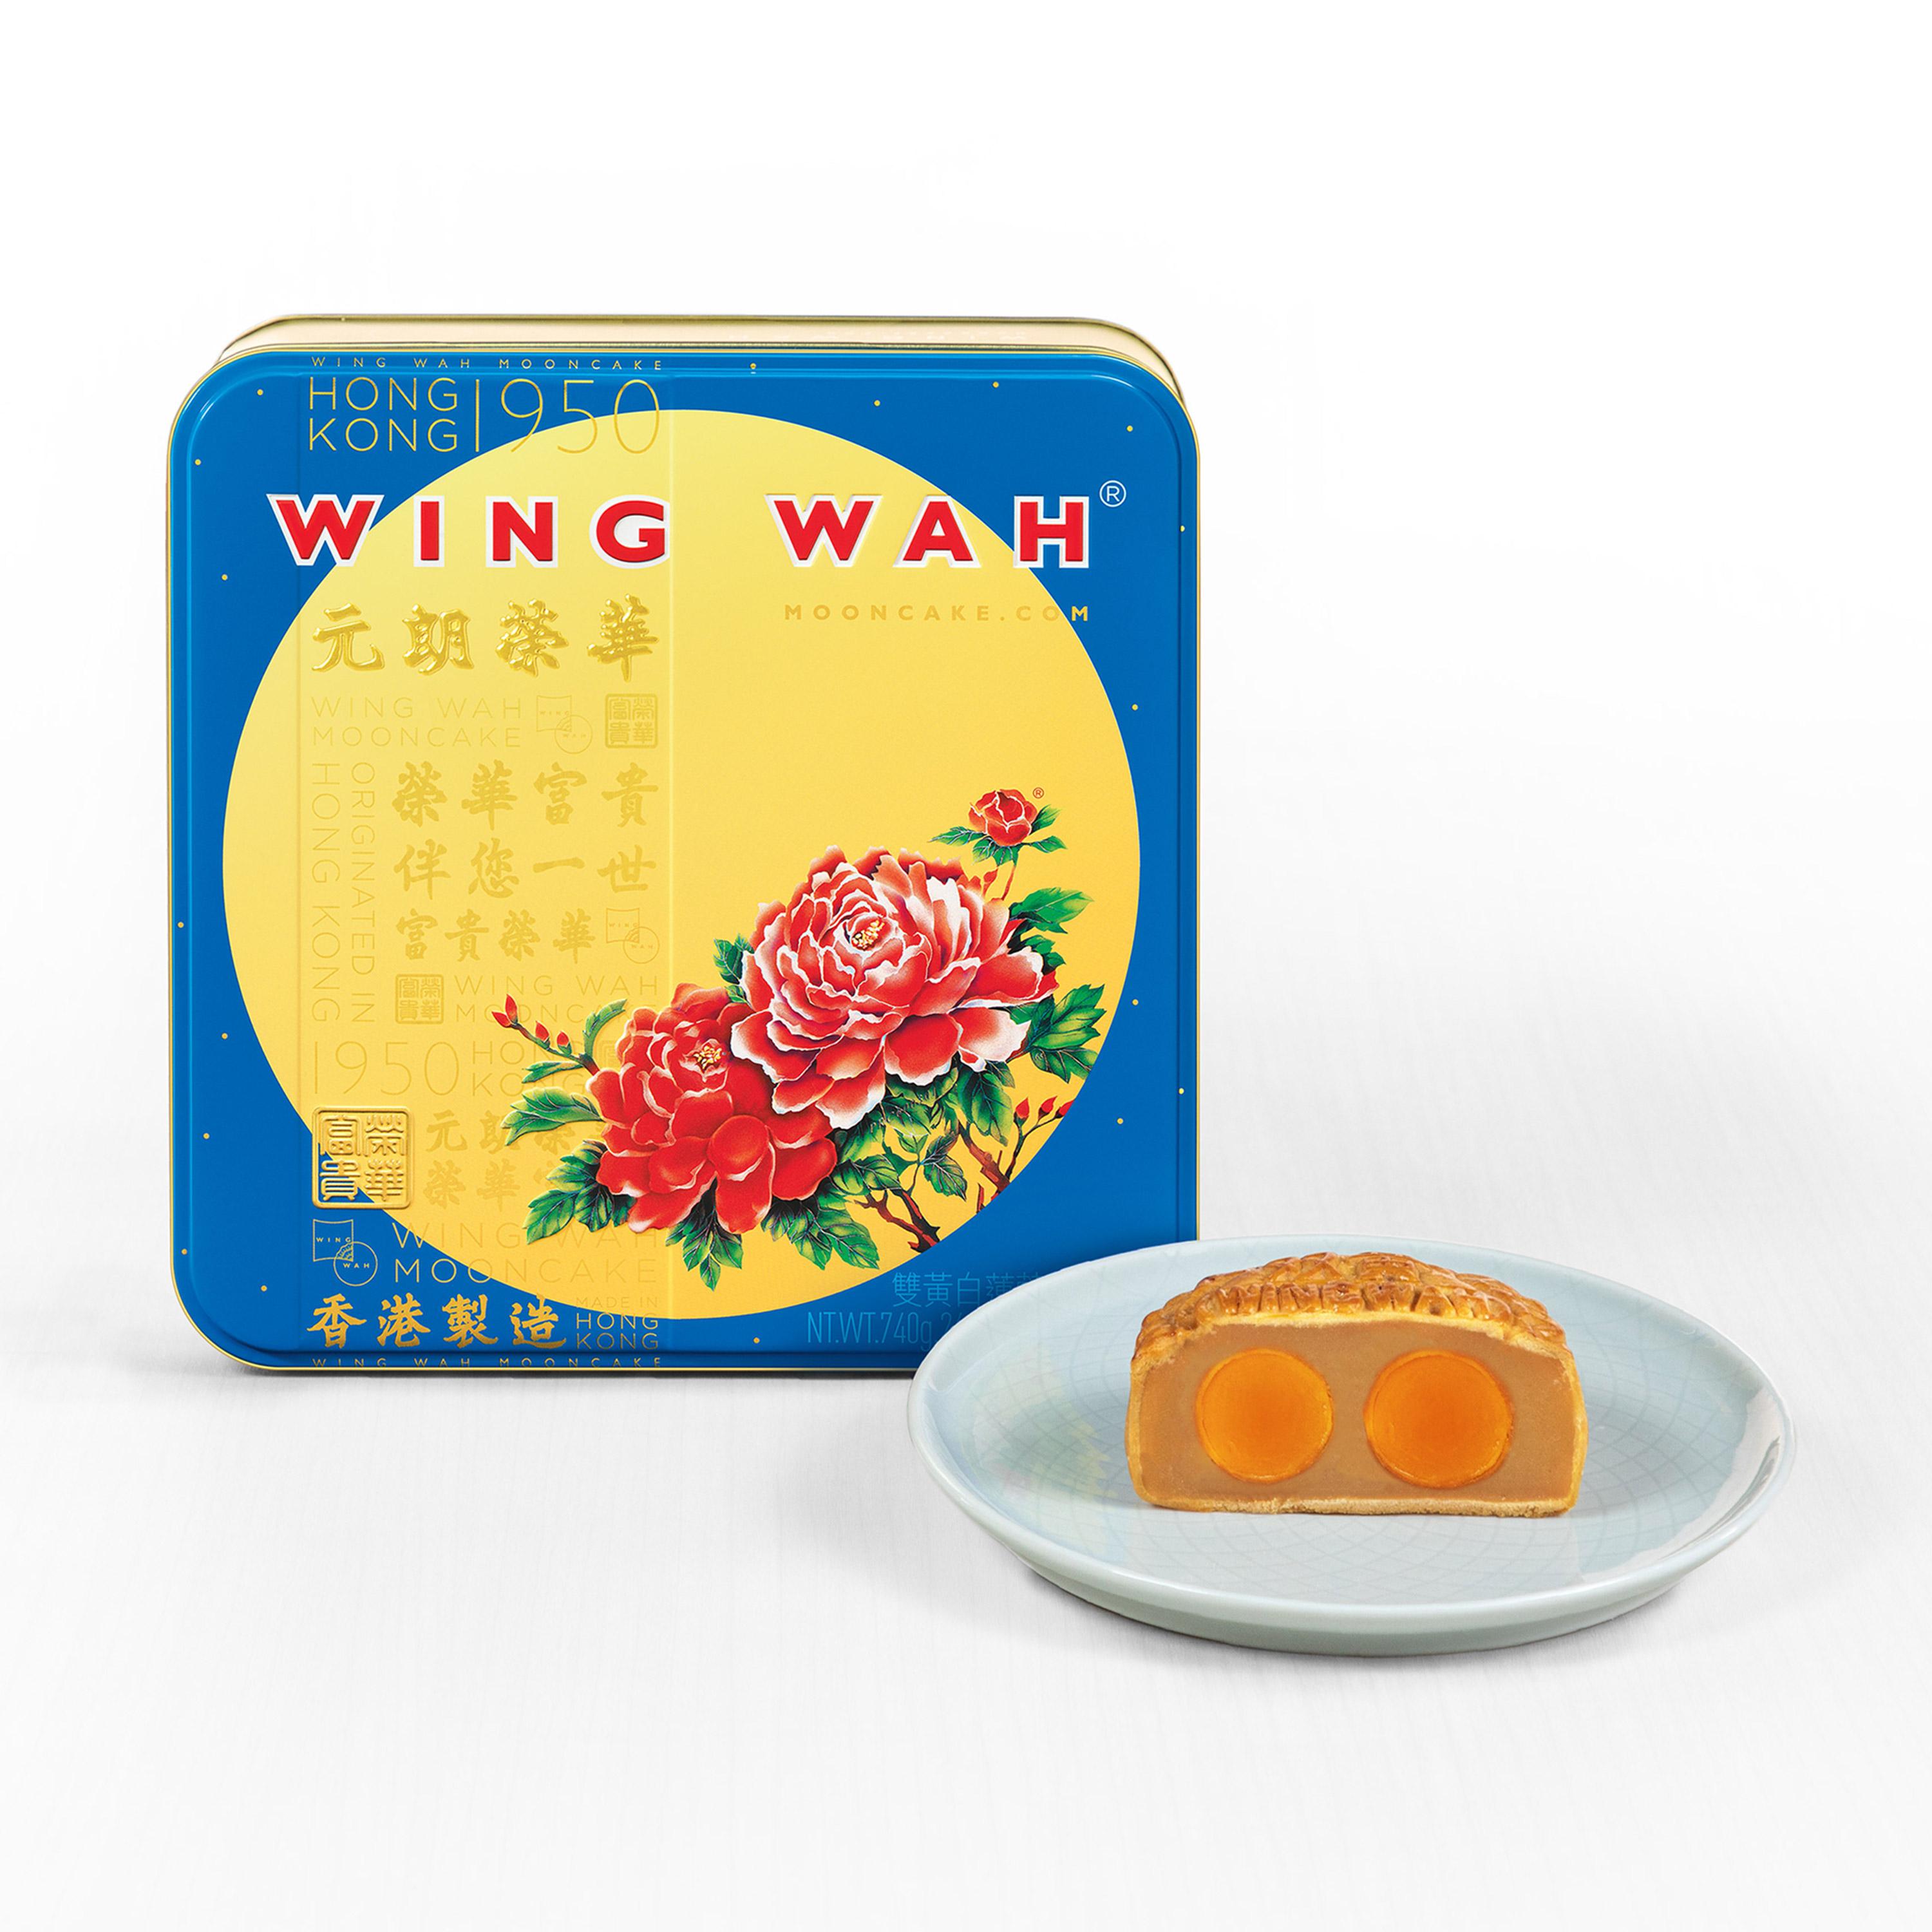 wing-wah-white-lotus-seed-paste-mooncake-2-yolks-gift-set-4pcs-final-sale